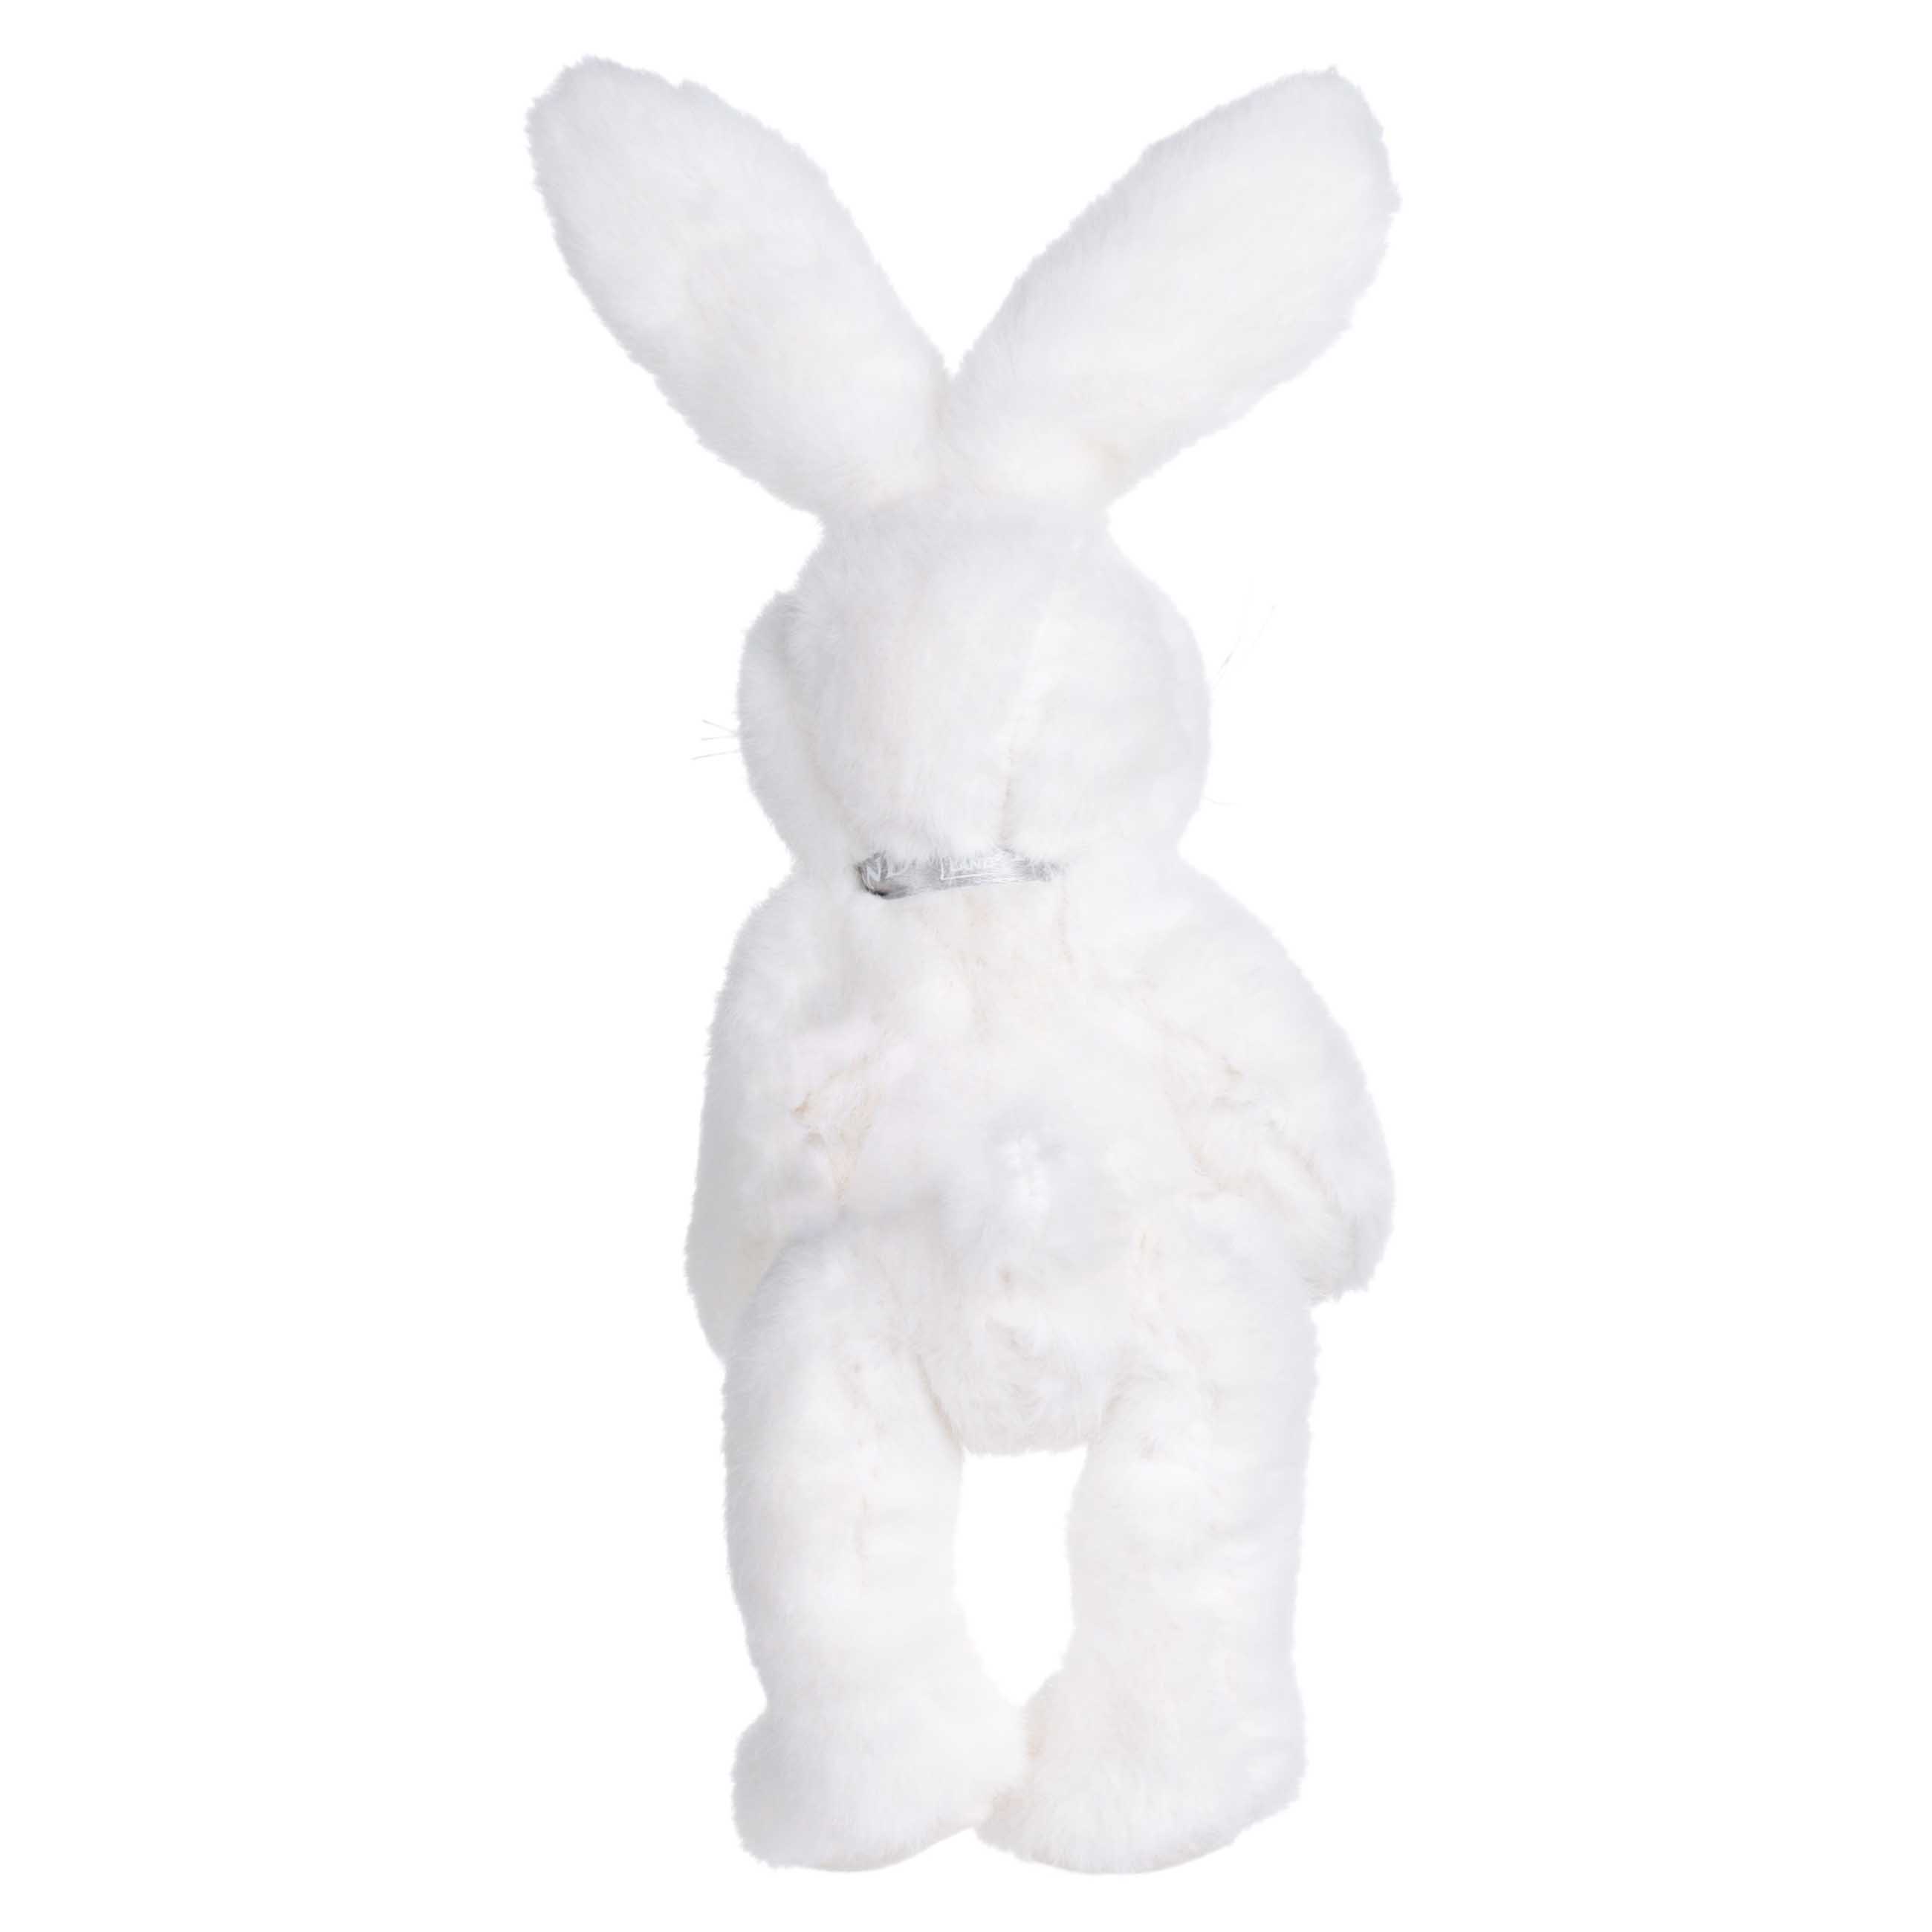 Игрушка, 20 см, мягкая, с подвижными лапами, полиэстер, белая, Кролик, Rabbit toy изображение № 2